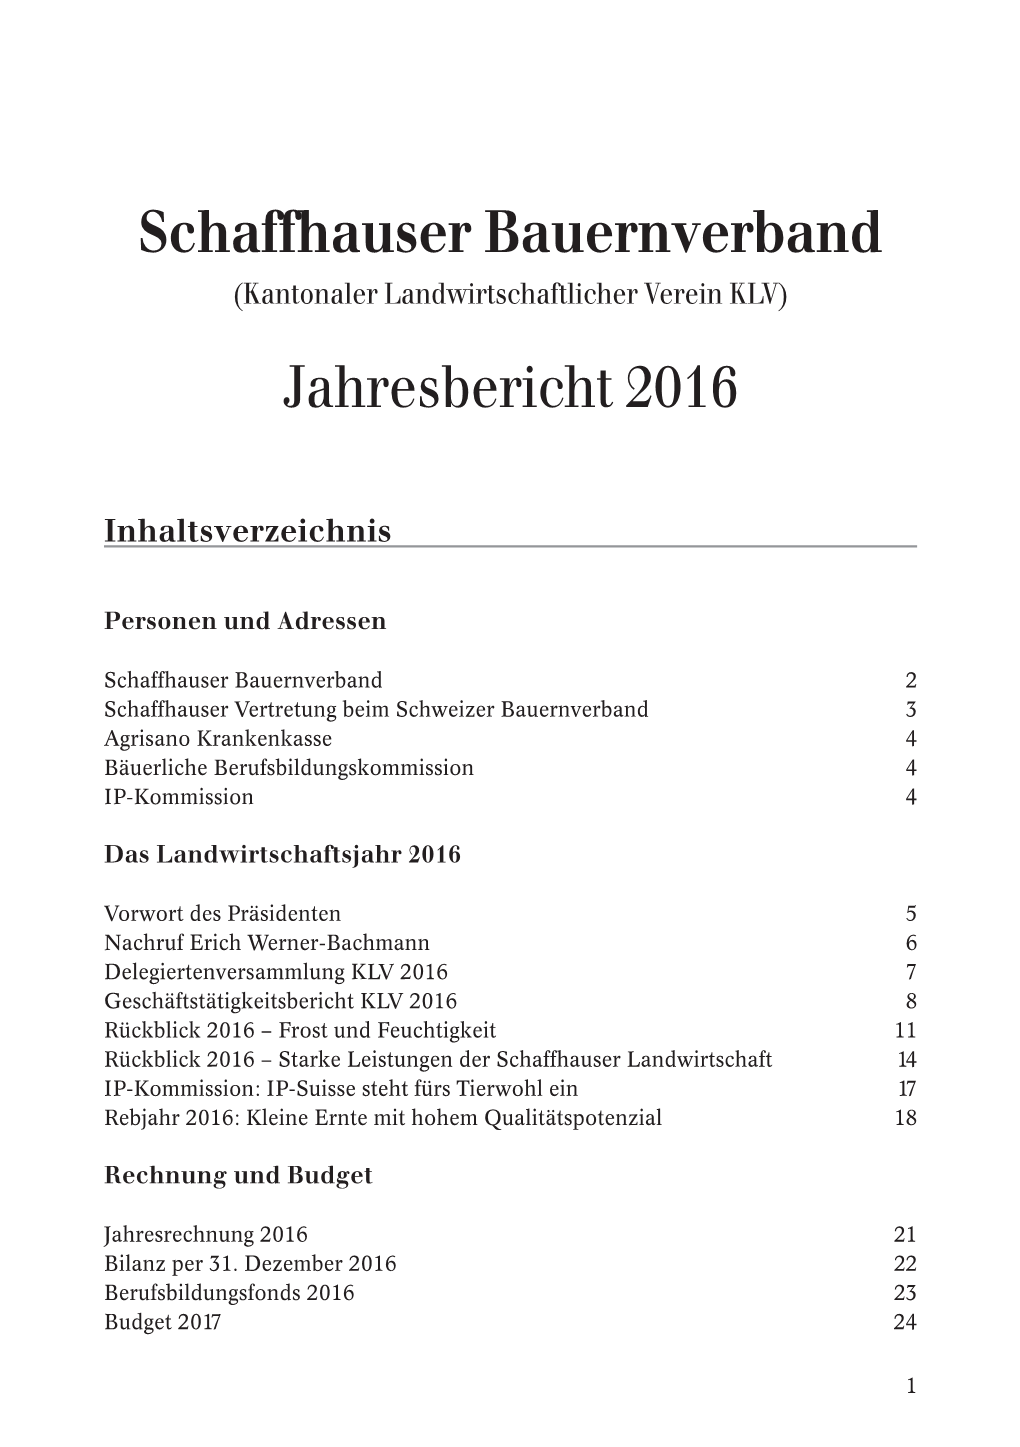 Schaffhauser Bauernverband Jahresbericht 2016